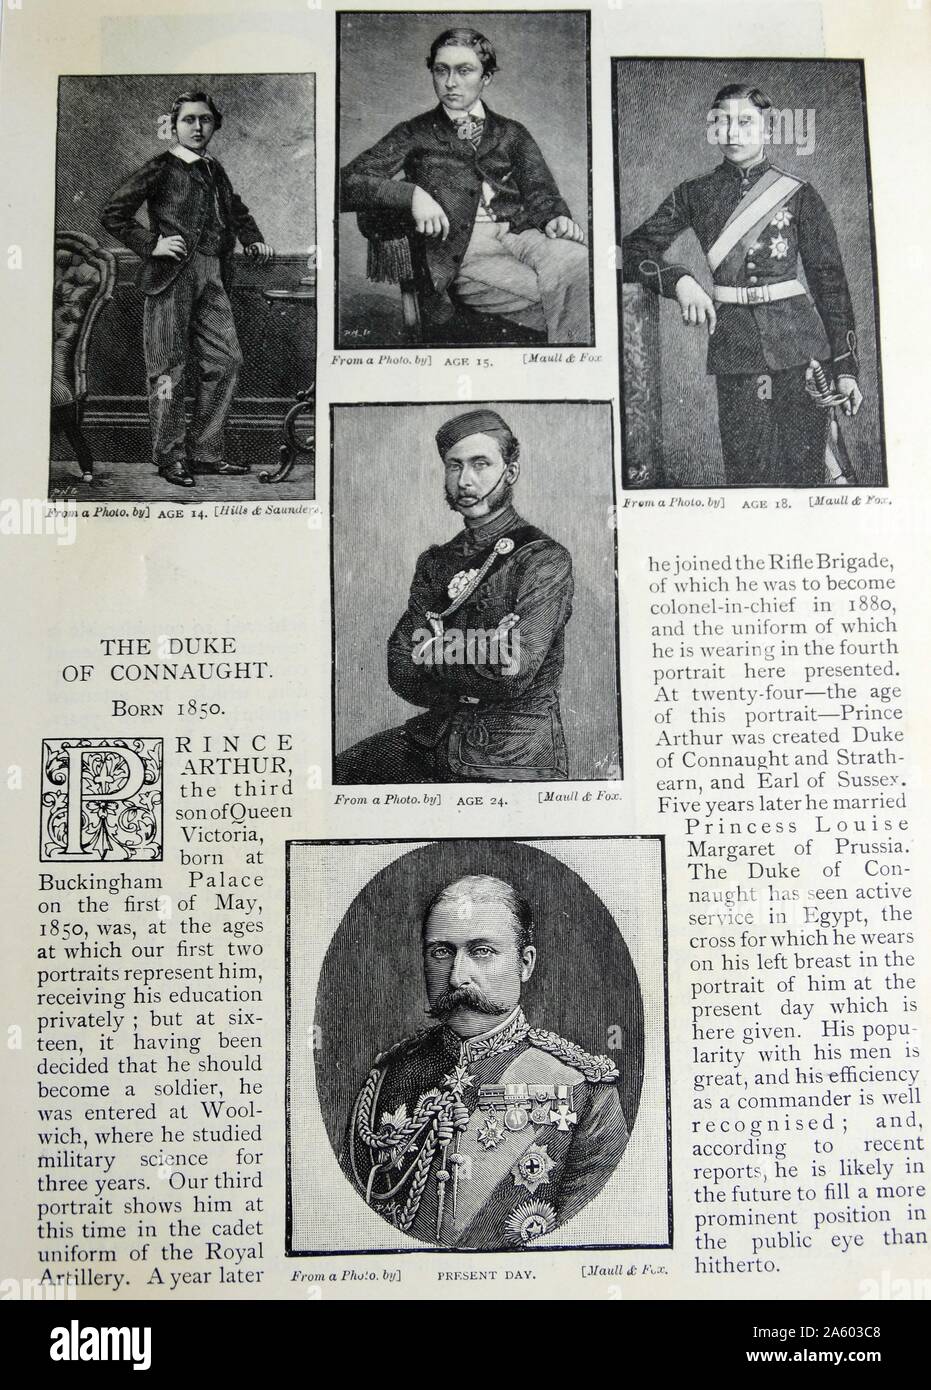 Porträts von Prinz Arthur, Duke of Connaught und Strathearn (1850-1942) Mitglied der britischen Königsfamilie, als Generalgouverneur von Kanada diente. Vom 19. Jahrhundert Stockfoto